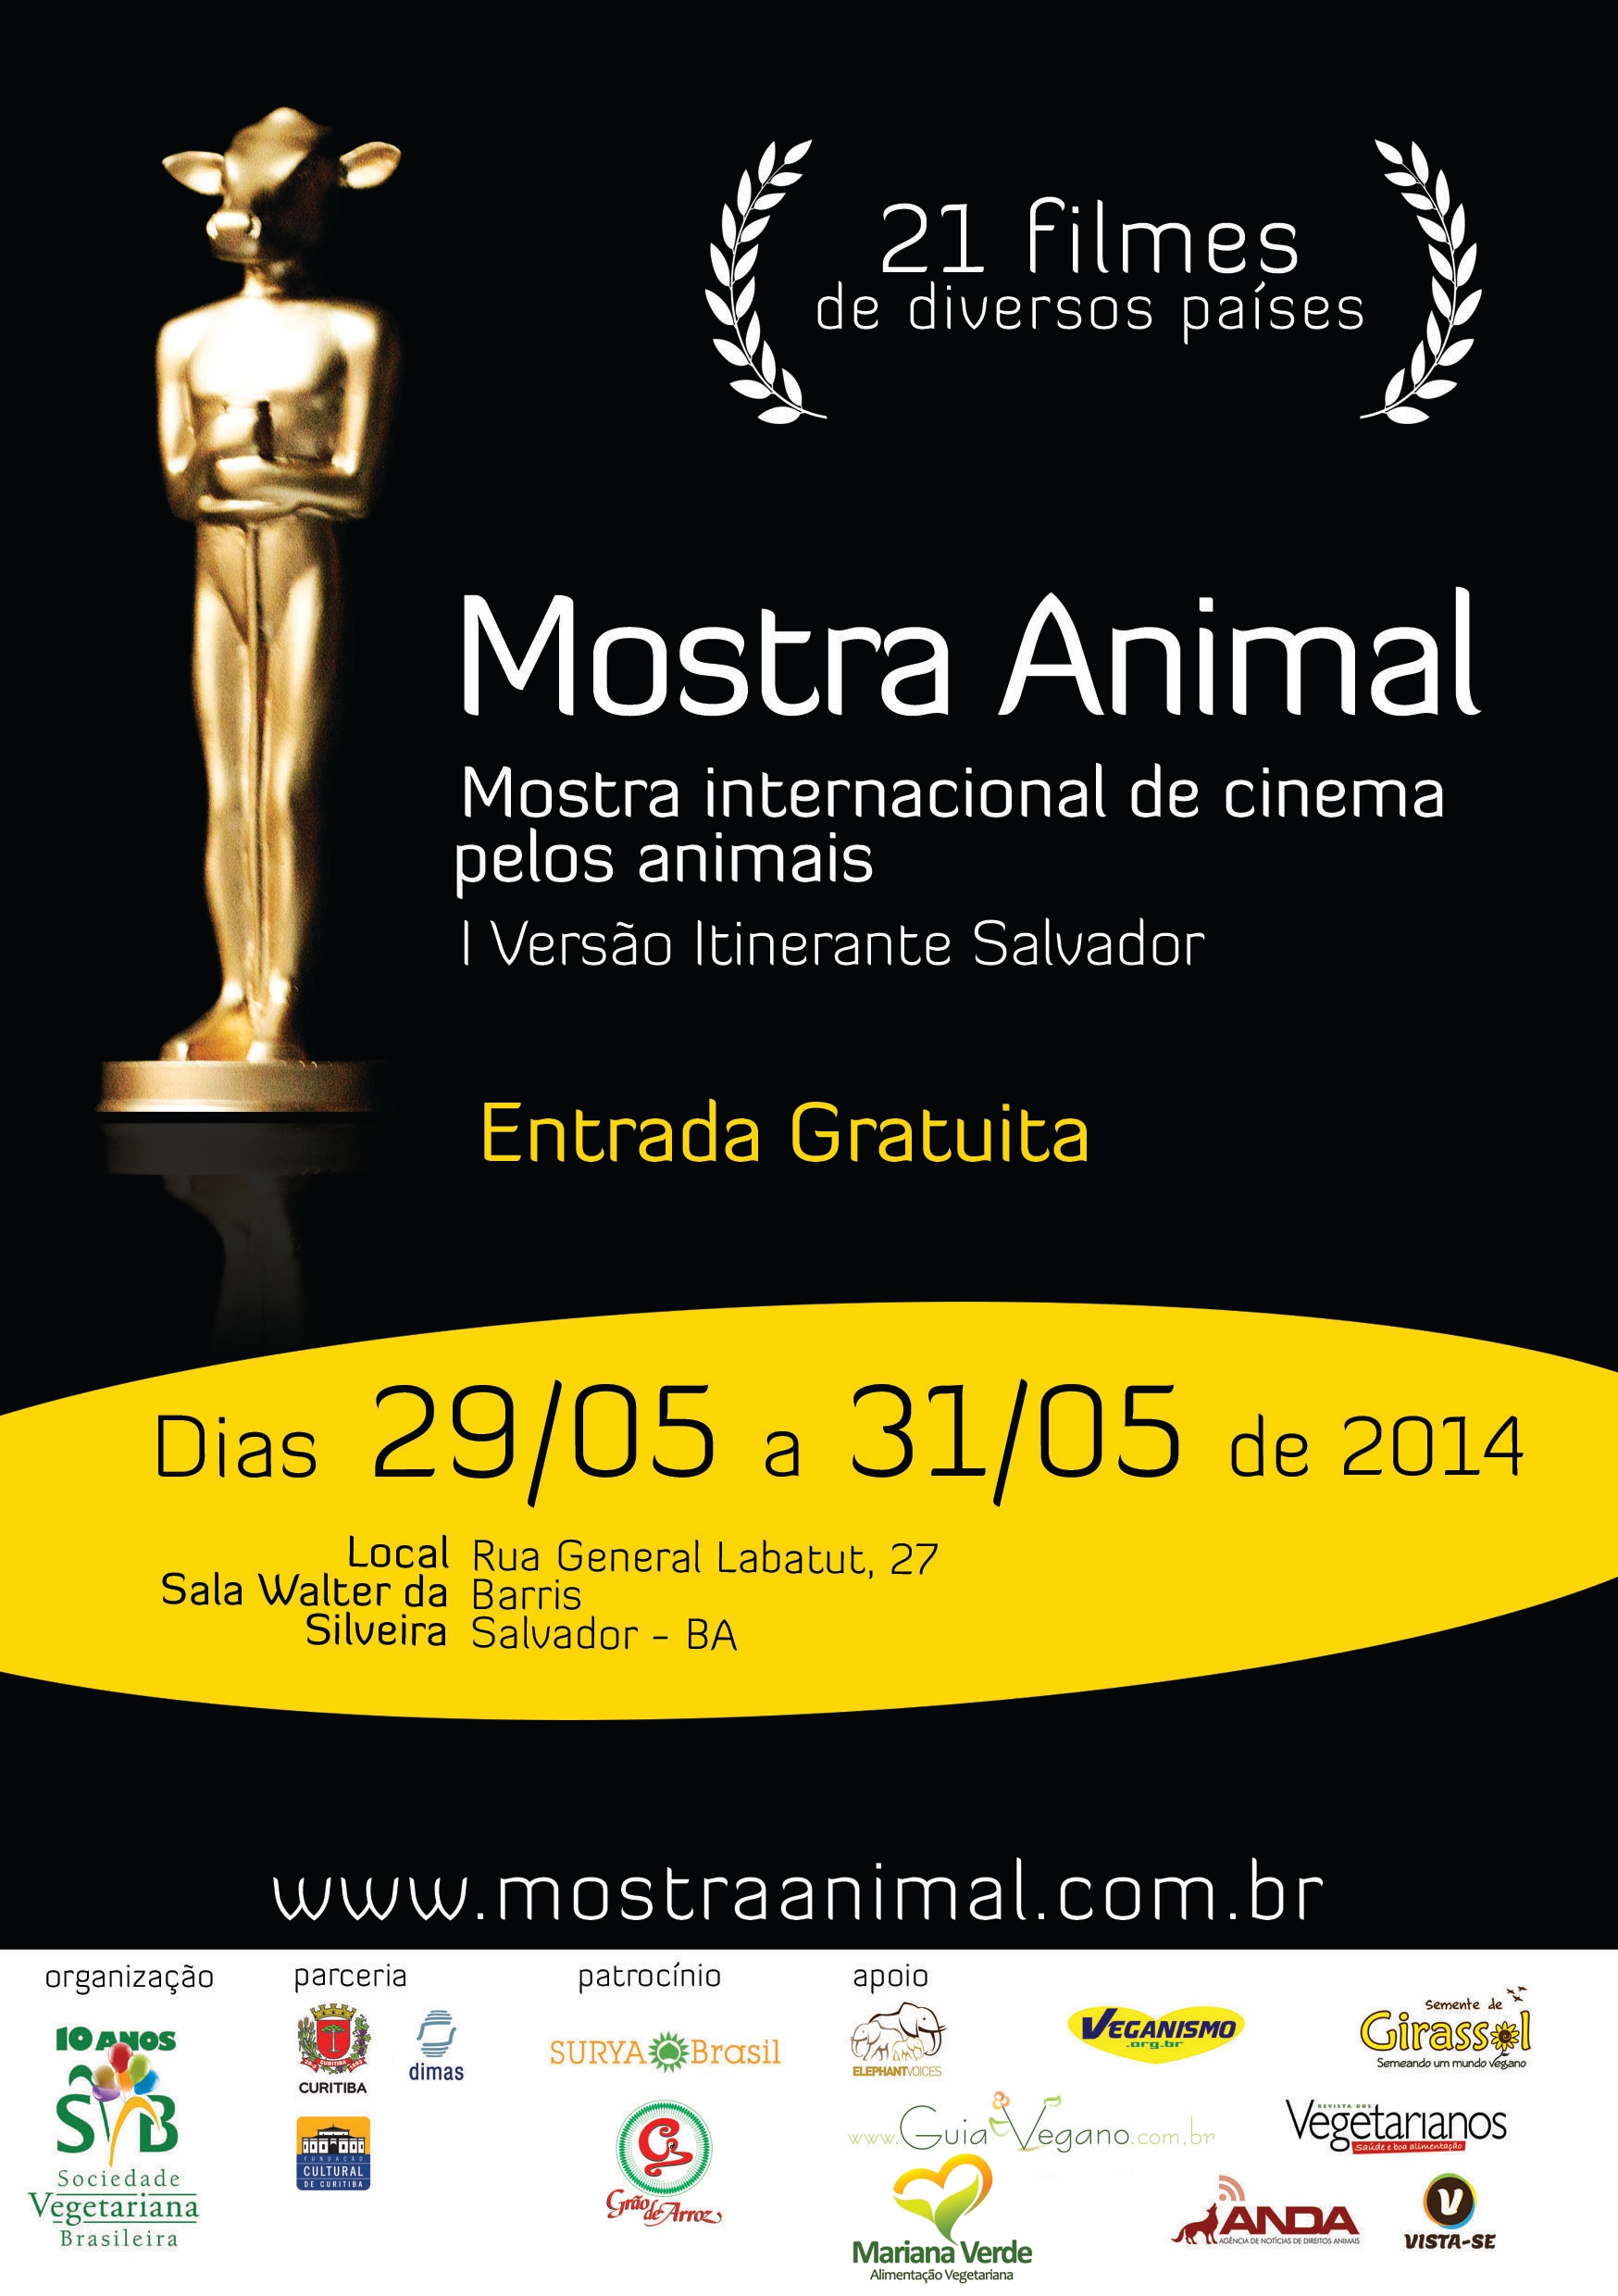 Mostra internacional de cinema pelos animais em Salvador